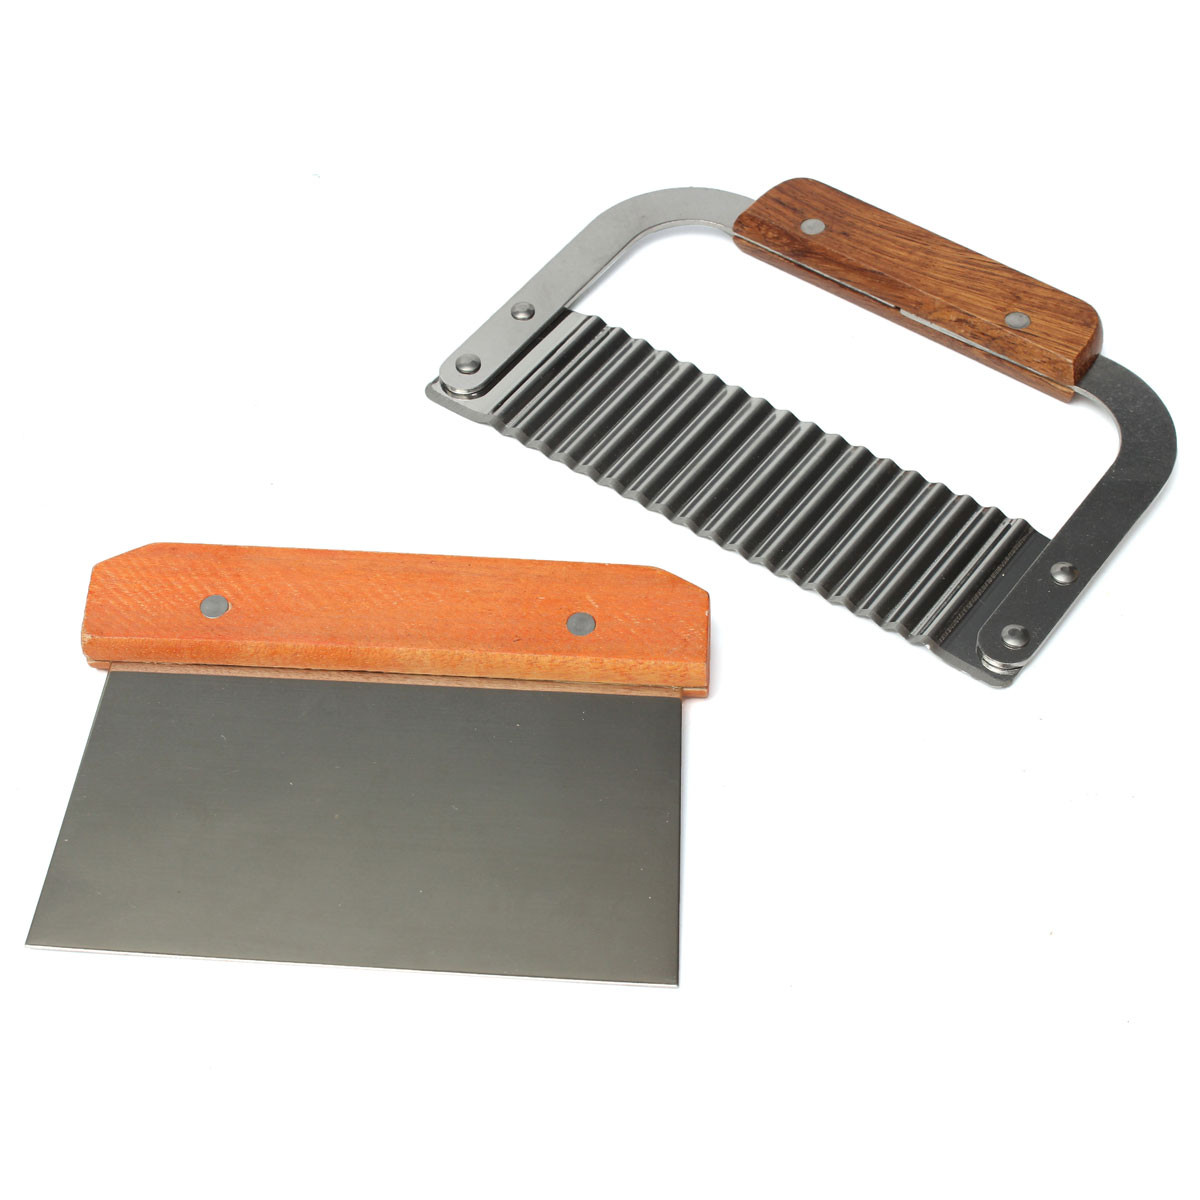 Soap-Mold-Loaf-Cutter-Adjustable-Wood-and-Beveler-Planer-Cutting-1039889-5